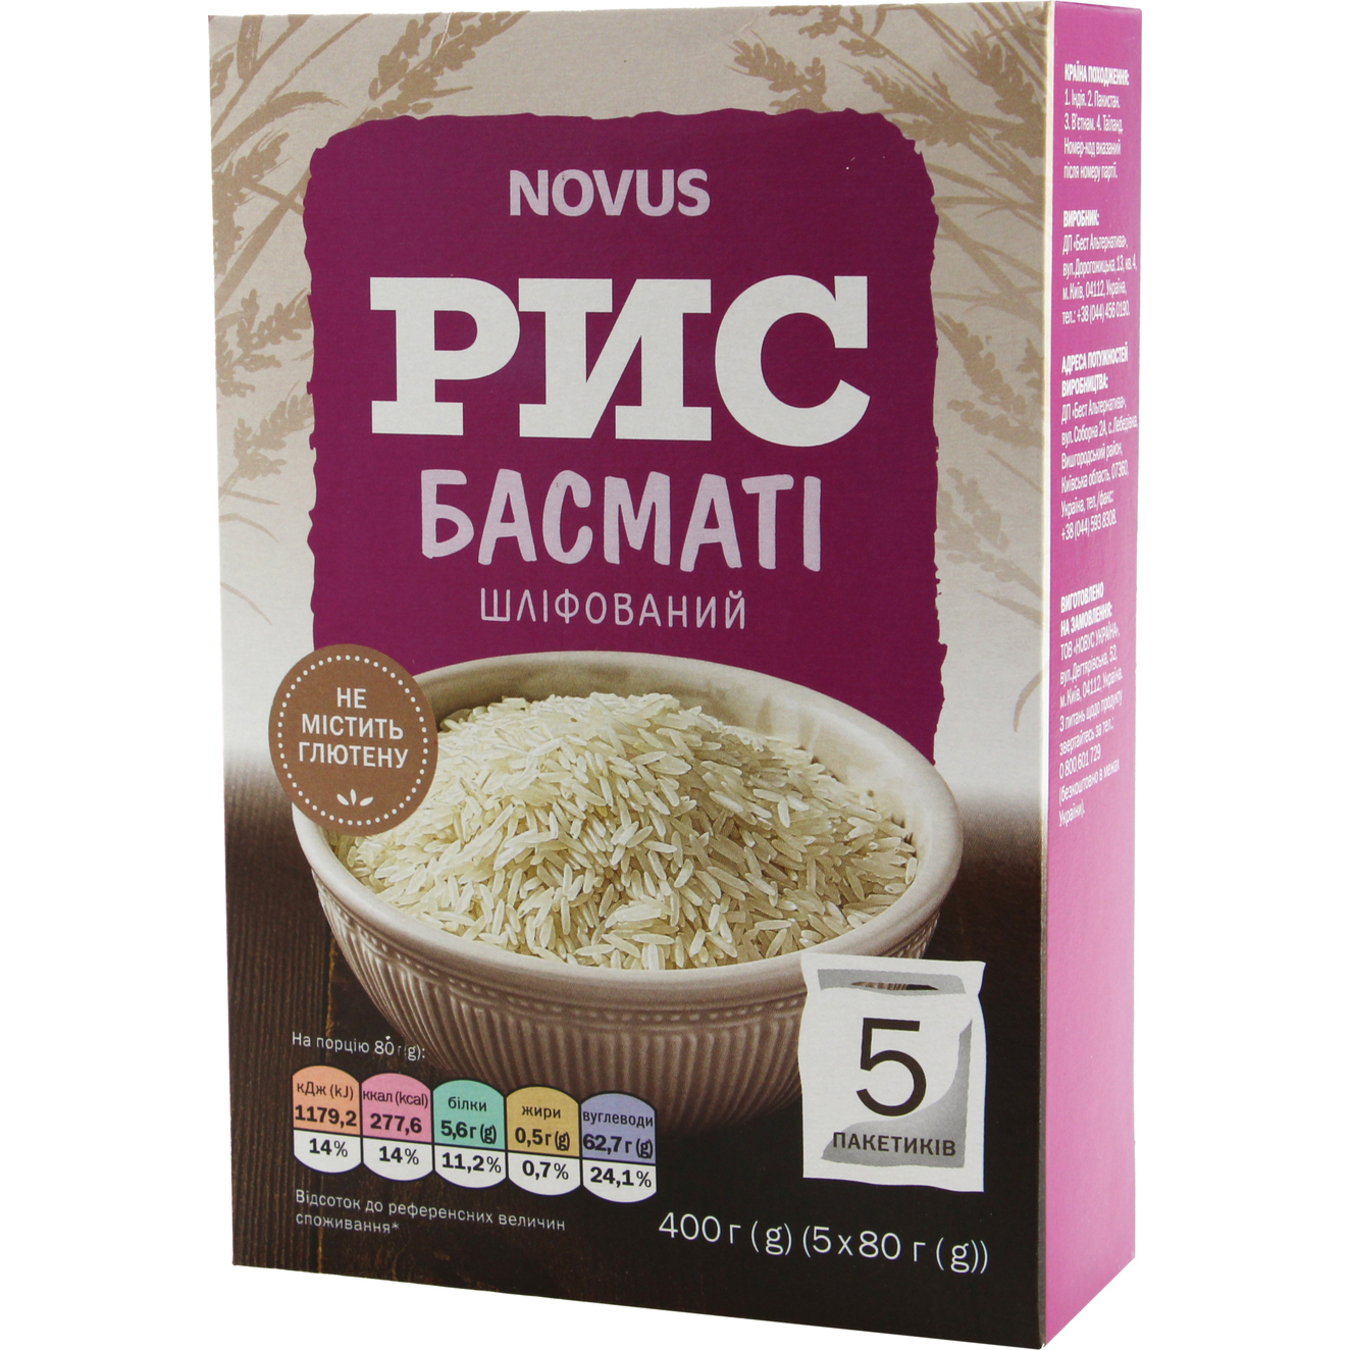 Novus Basmati Polished Rice 5x80g 2